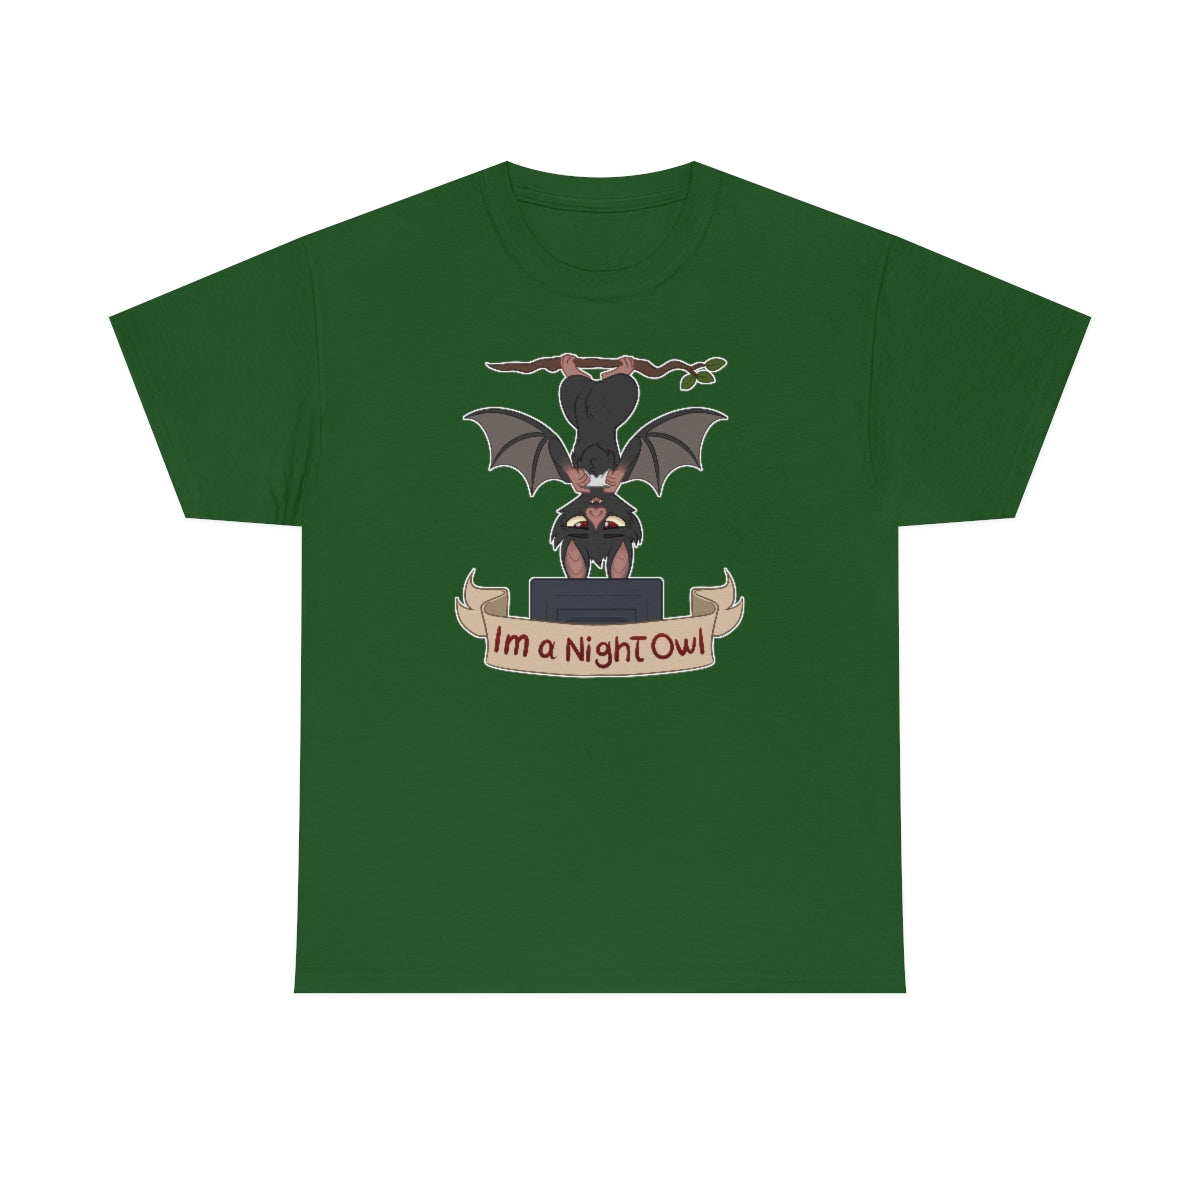 I am a Night Owl - T-Shirt T-Shirt Artworktee Green S 